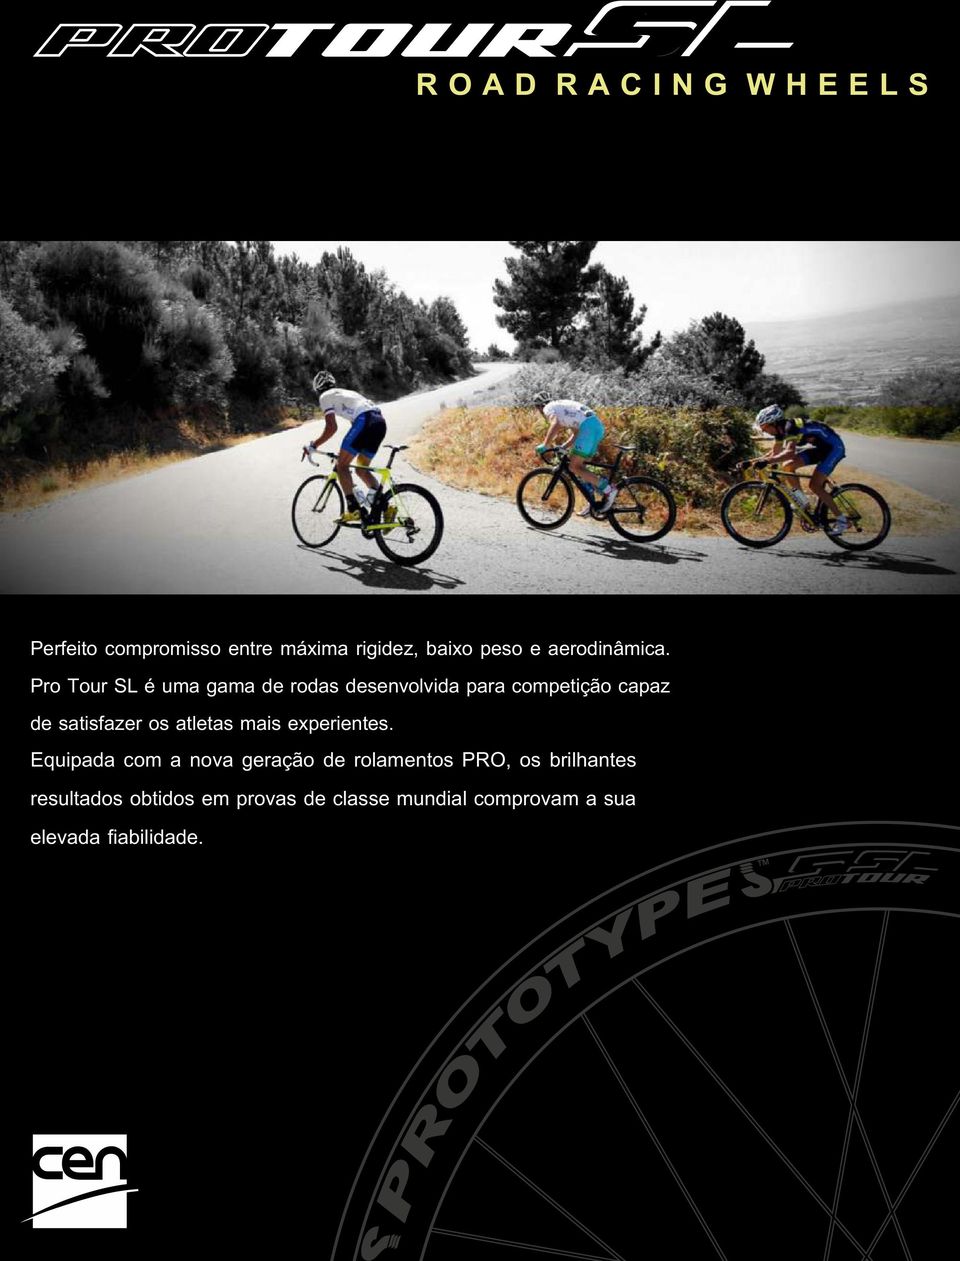 Pro Tour SL é uma gama de rodas desenvolvida para competição capaz de satisfazer os